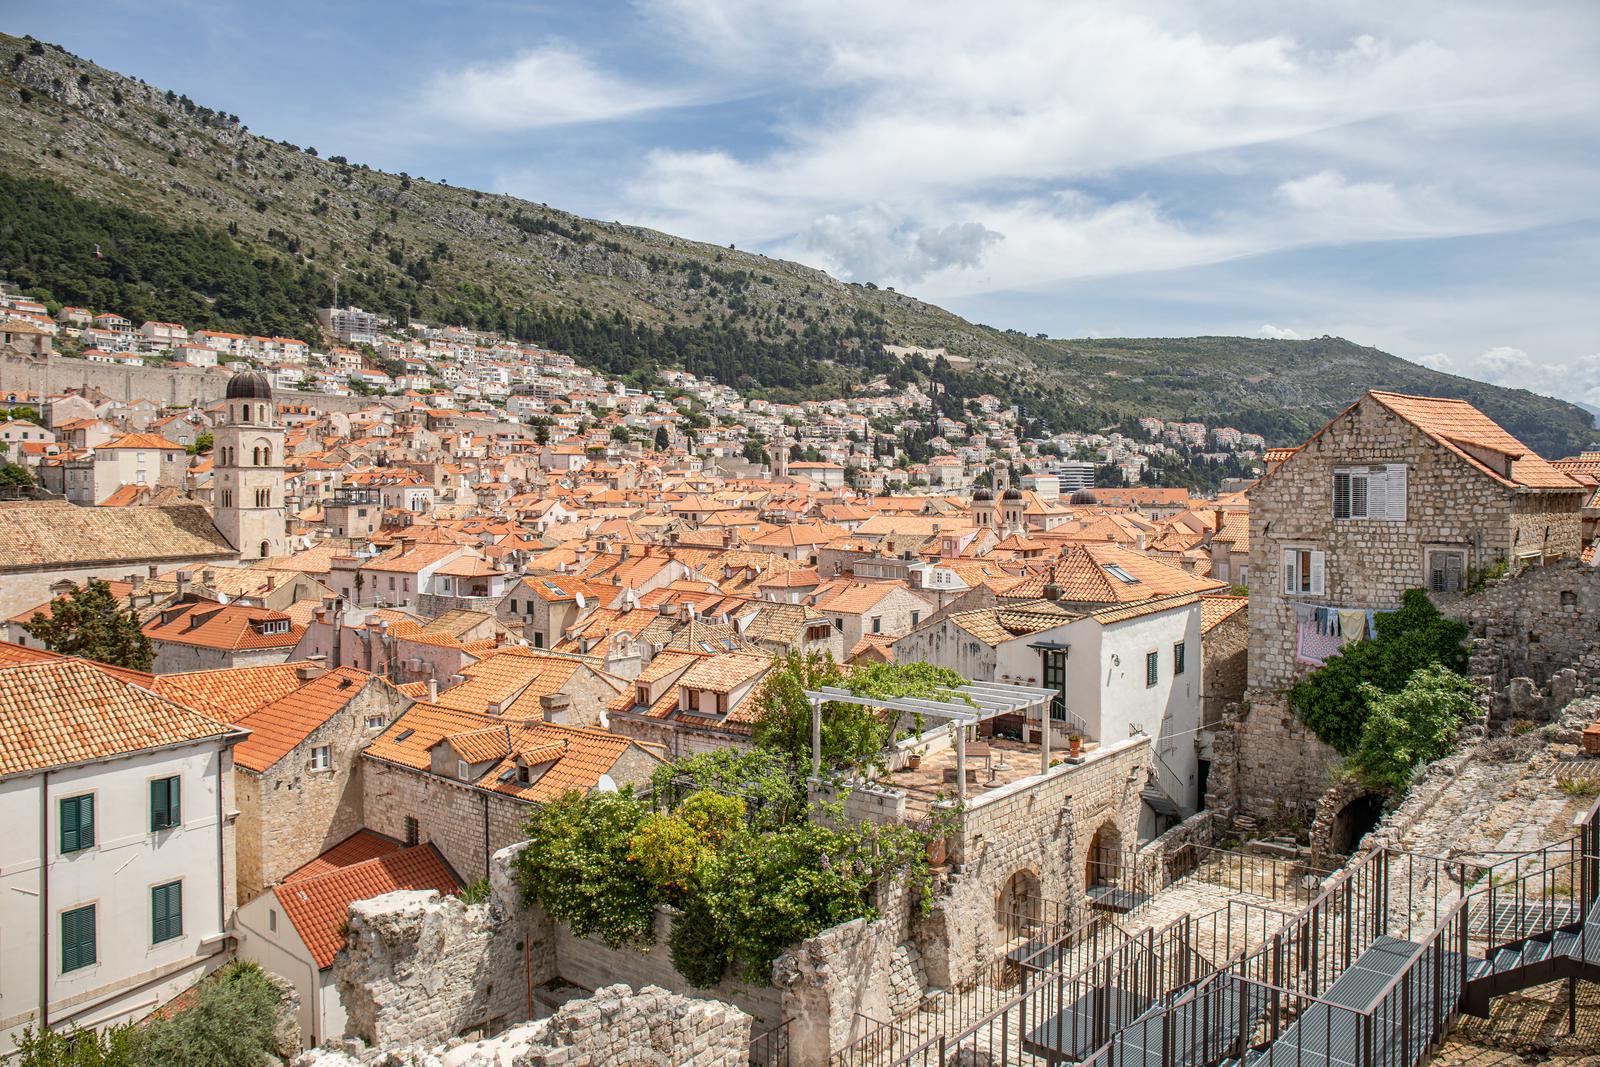 03.05.2021.,Stara gradska jezgra, Dubrovnik - Gradski kadrovi, pogled sa zidina.rPhoto: Grgo Jelavic/PIXSELL